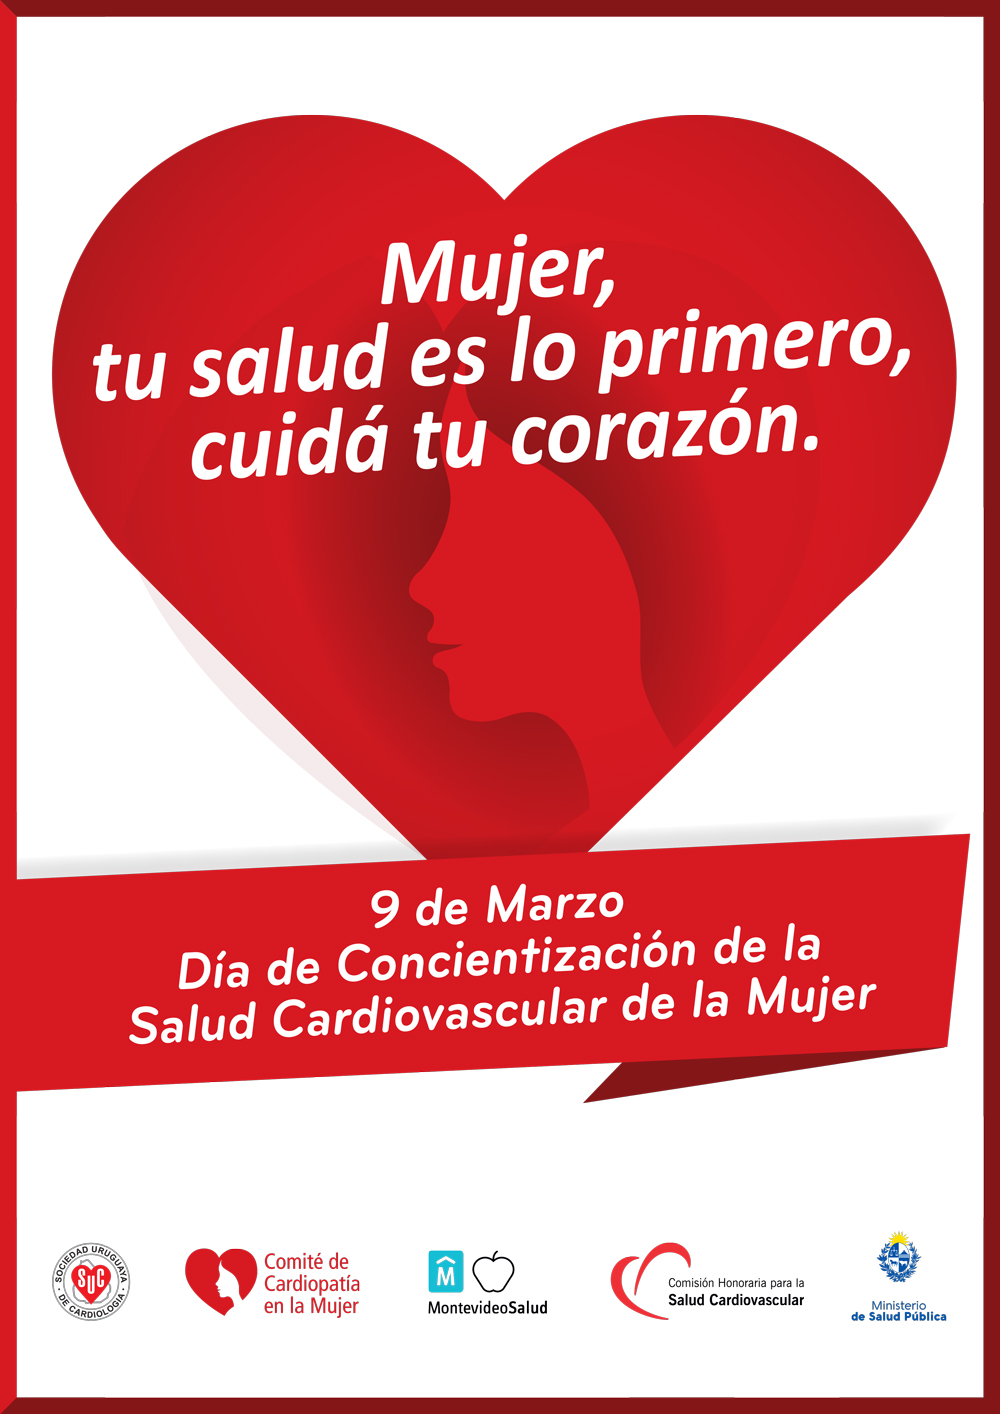 9 de marzo – Día Nacional de concientización de la salud cardiovascular de la mujer